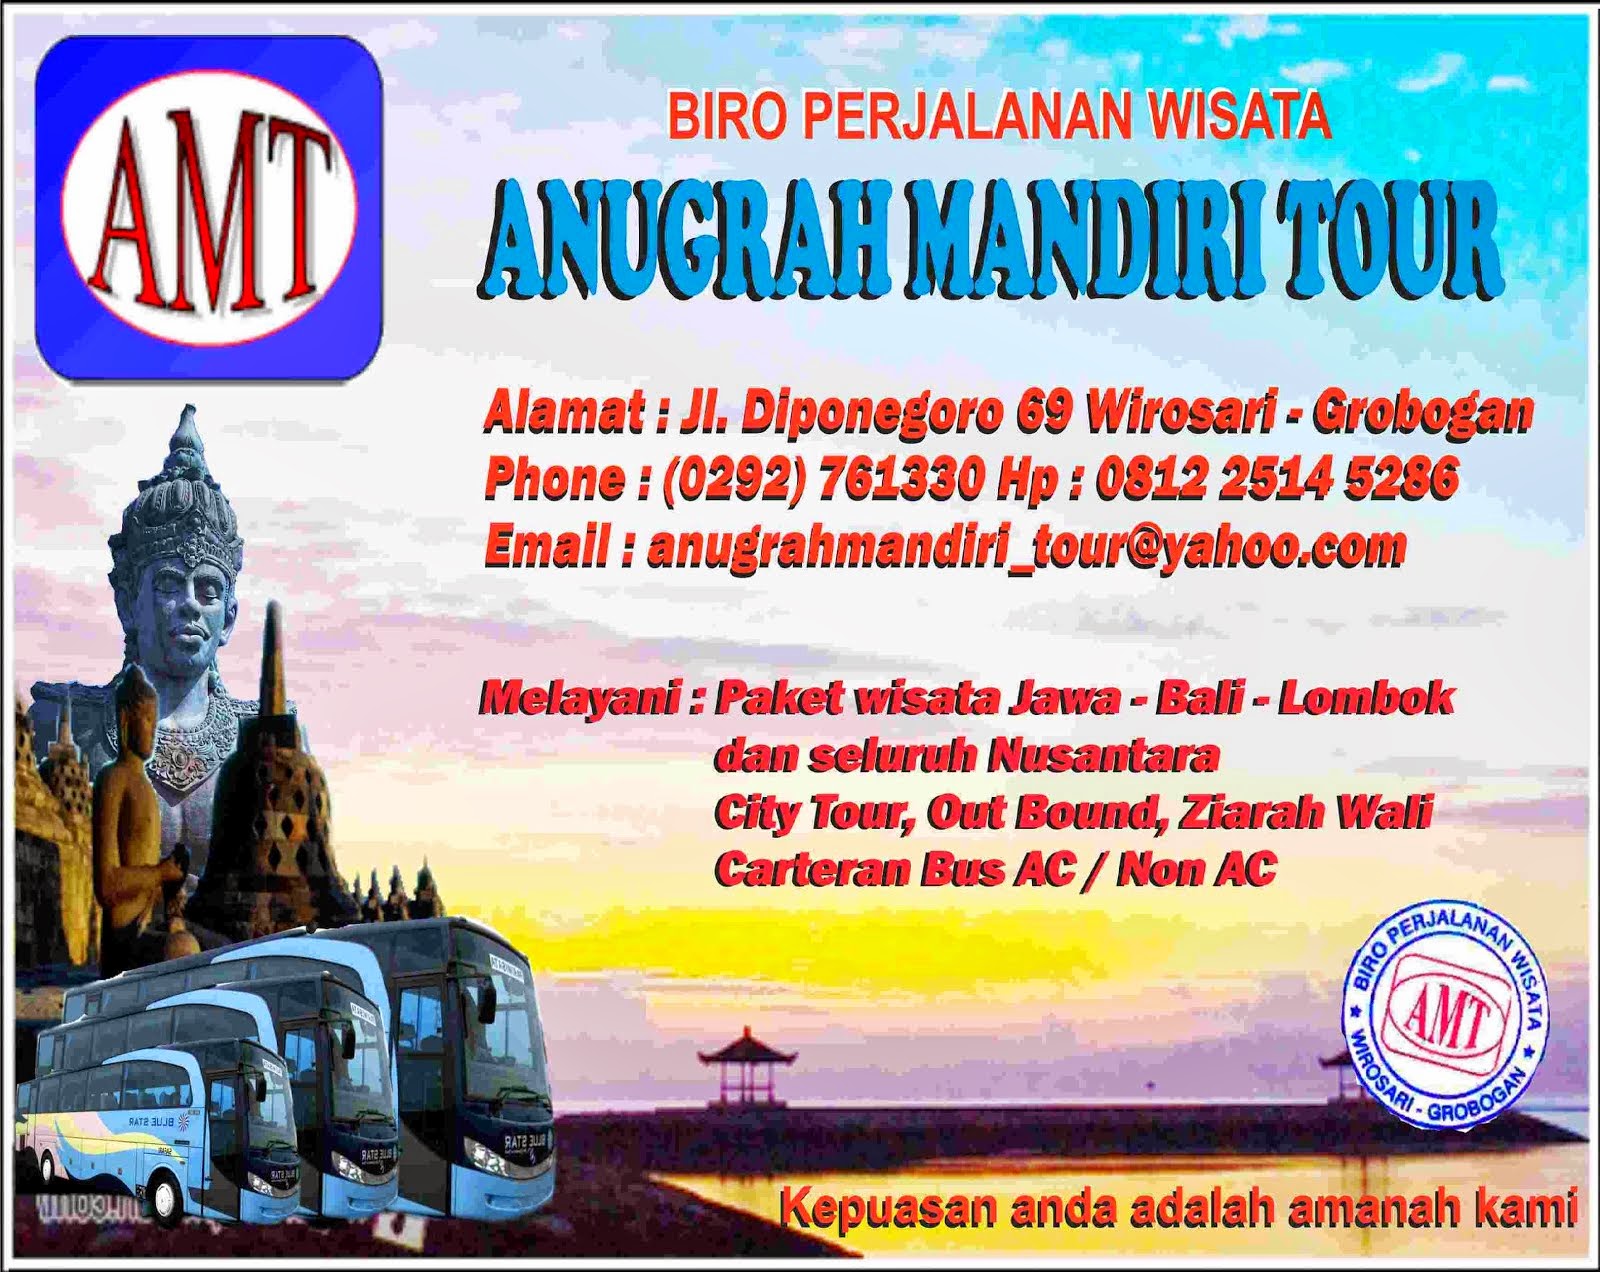 ANUGRAH MANDIRI TOUR